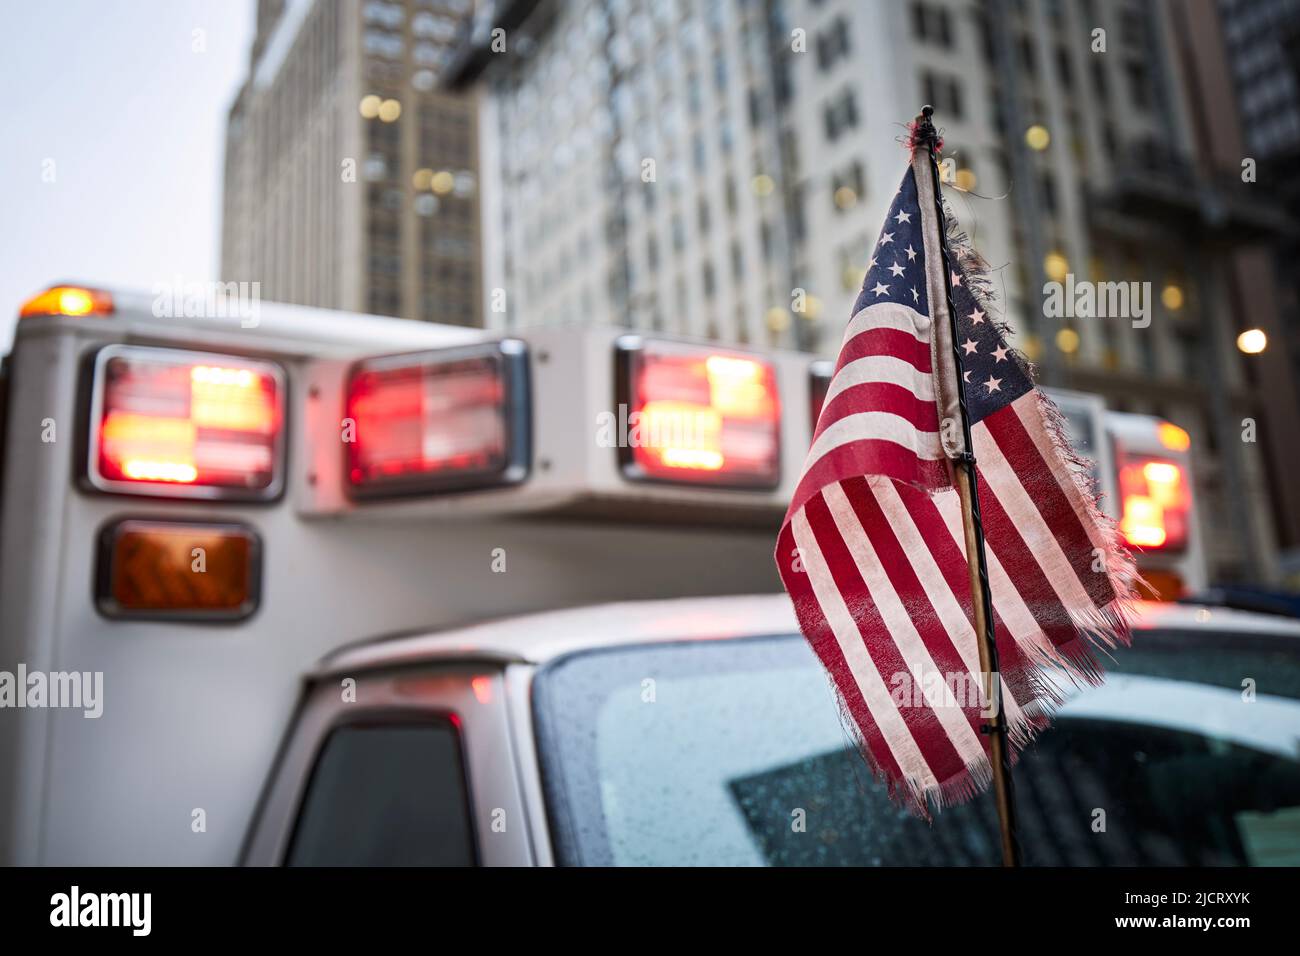 Nahaufnahme der amerikanischen Flagge gegen das rote Blinklicht der Sirene des Ambulanzwagens. Themen Notfall, Rettung und Hilfe. Stockfoto